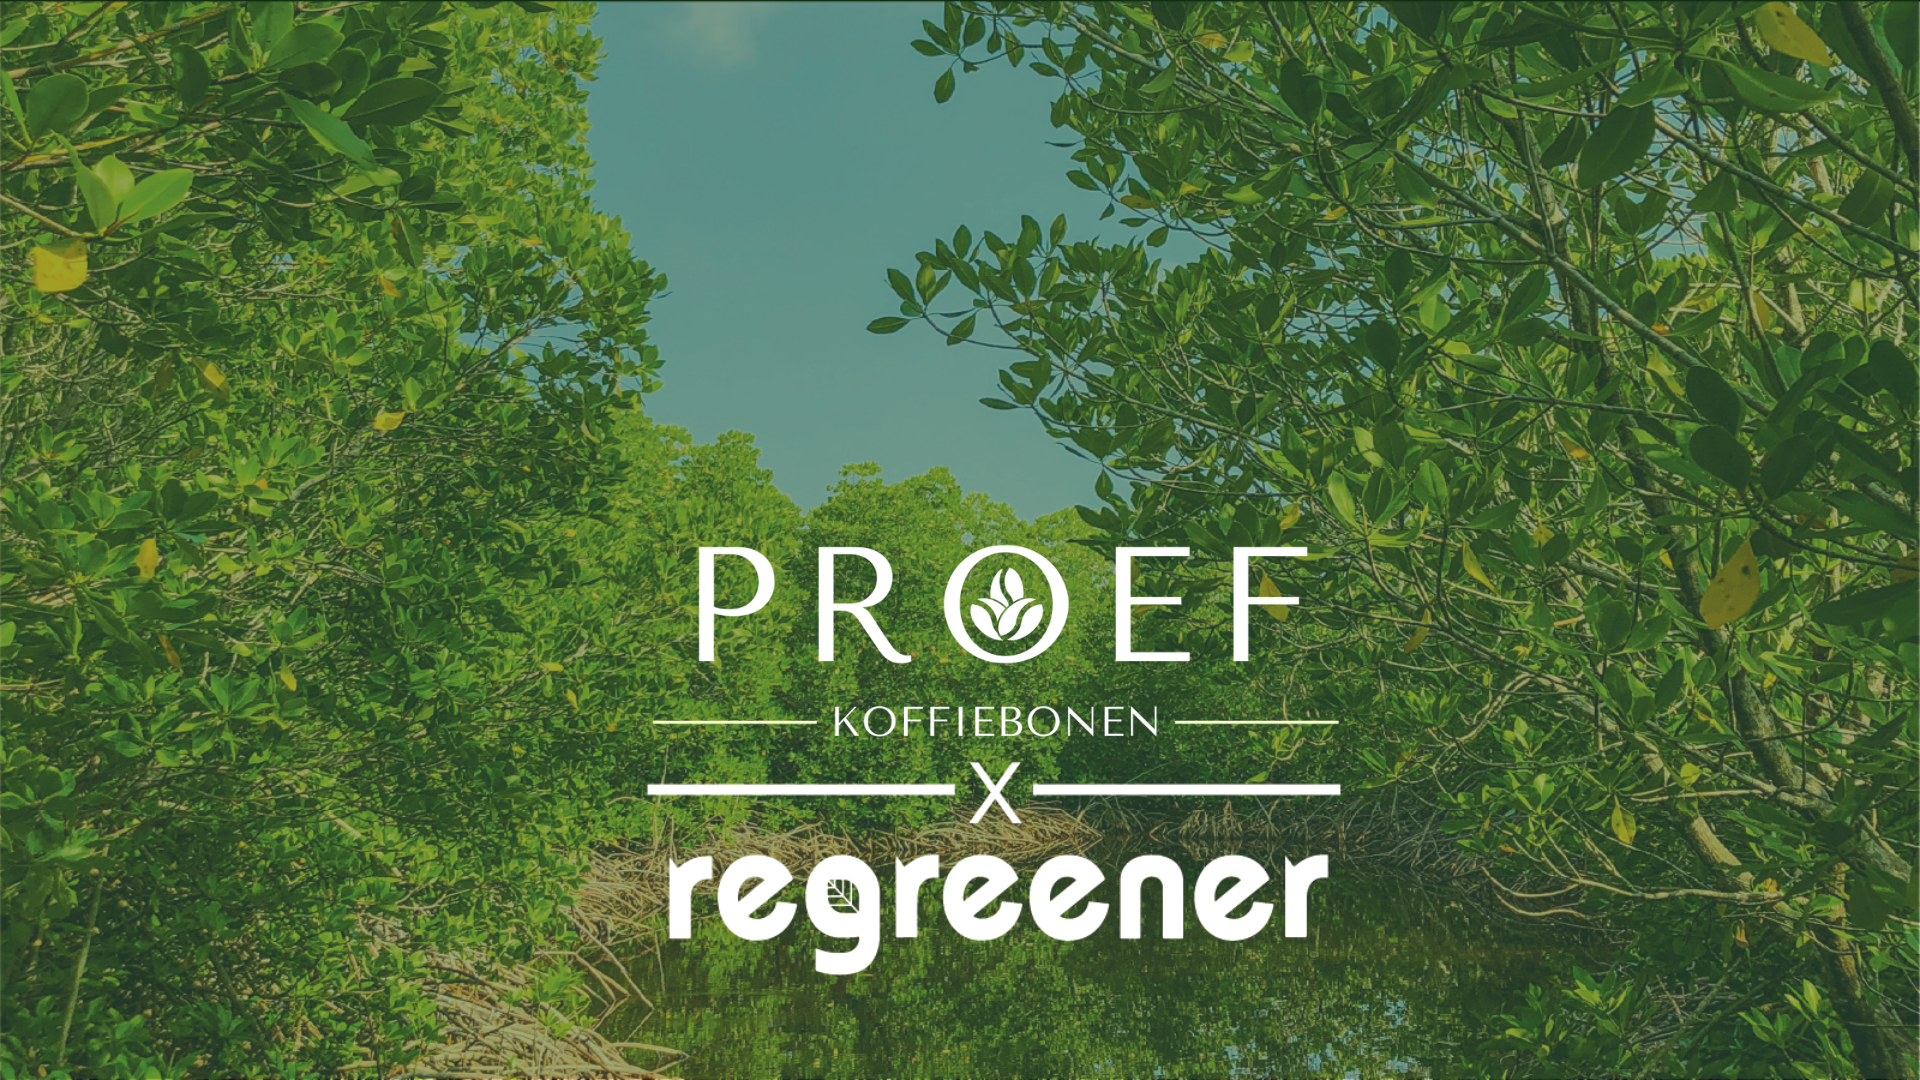 Proef Koffiebonen x Regreener Partnership Announcement